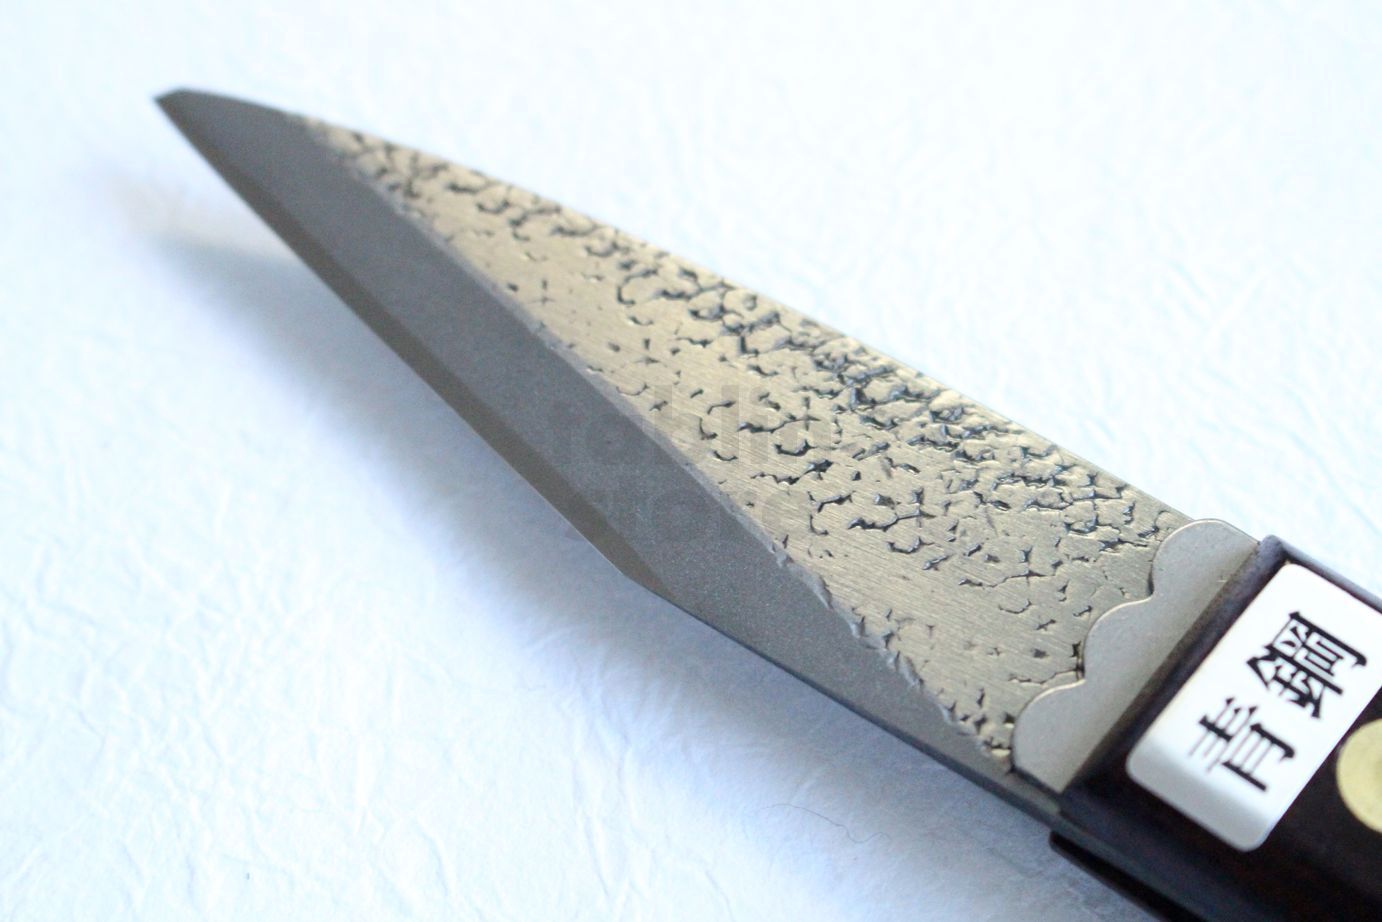 Good value made-in-Japan kiridashi knives from Olfa. Both knives